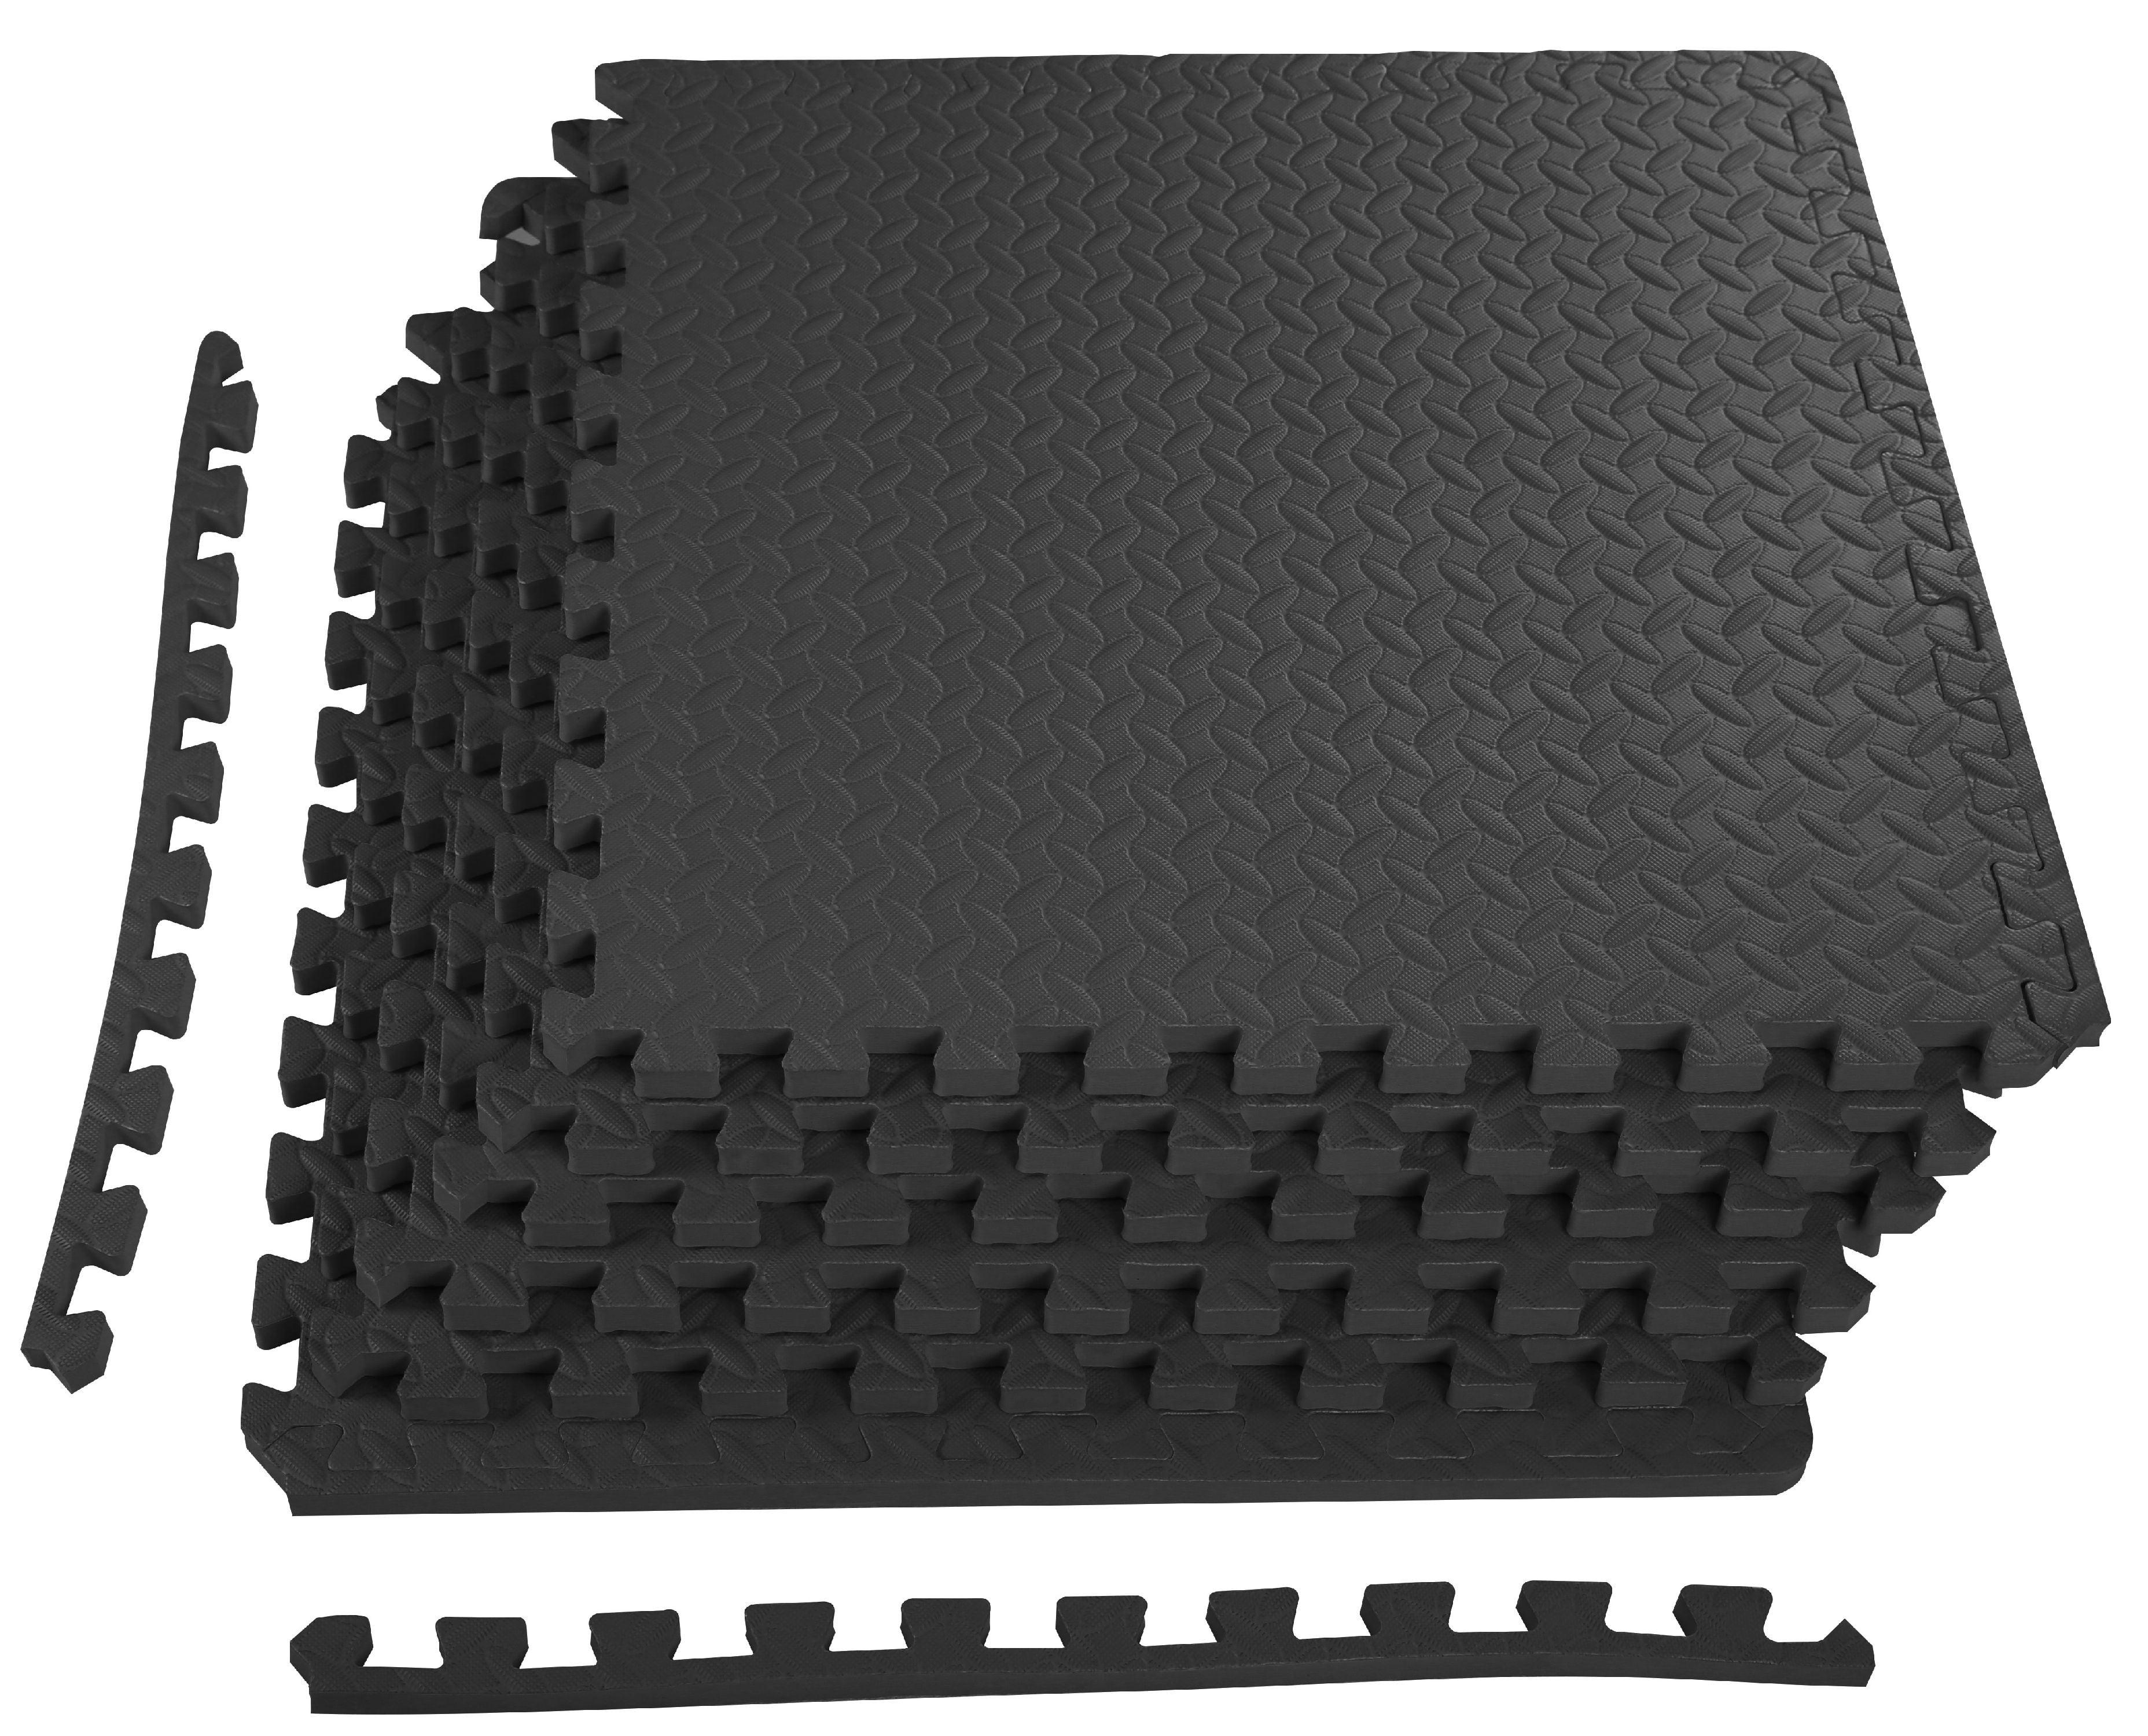 192 sqft wood grain interlocking foam floor puzzle tiles mat puzzle mat flooring